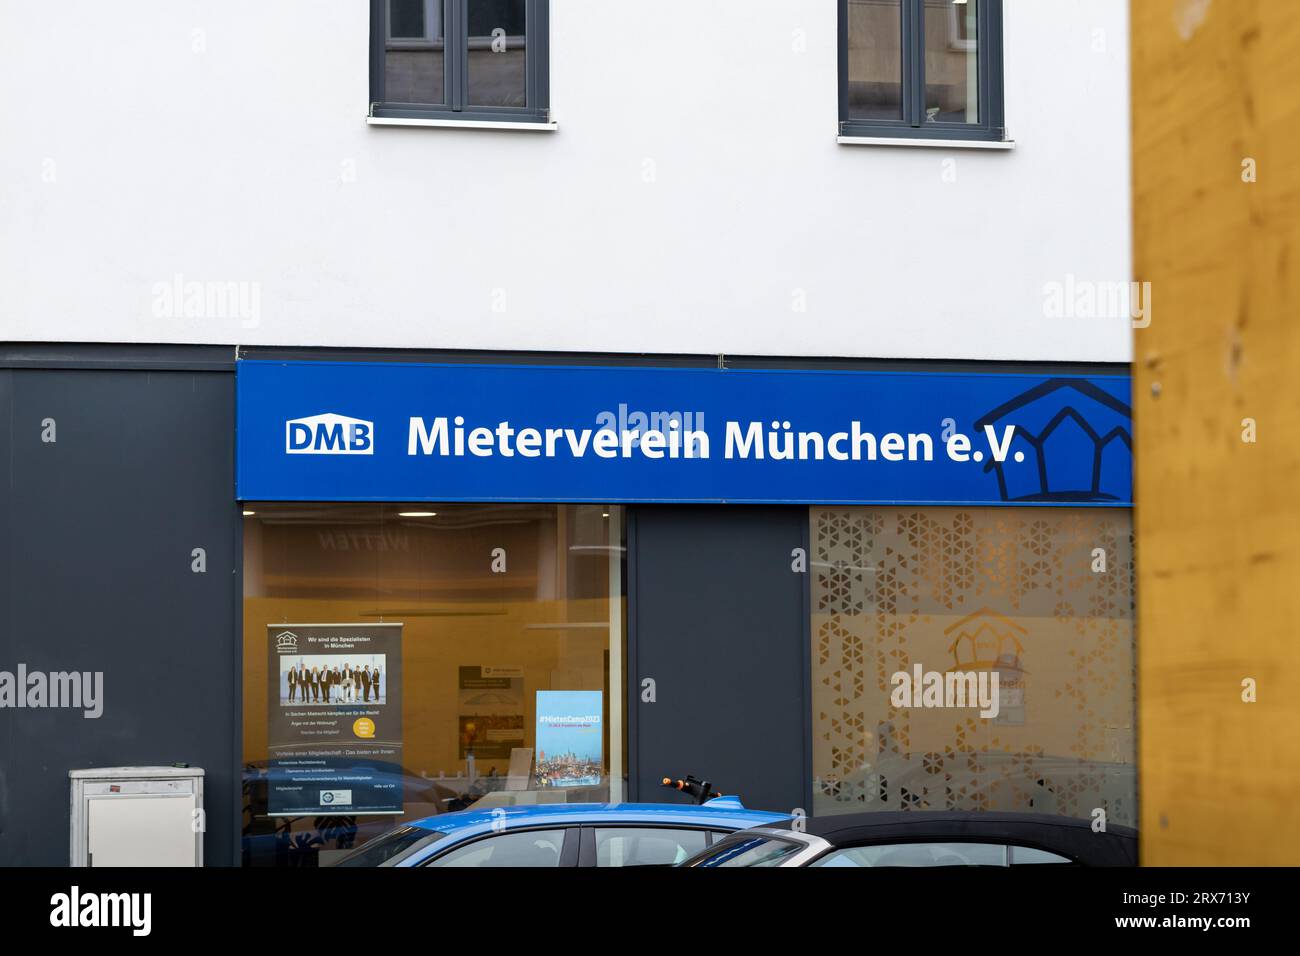 Mieterverein München e.V. (associazione degli inquilini) logo su una facciata dell'edificio. L'organizzazione sostiene gli interessi degli inquilini e fornisce consigli. Foto Stock